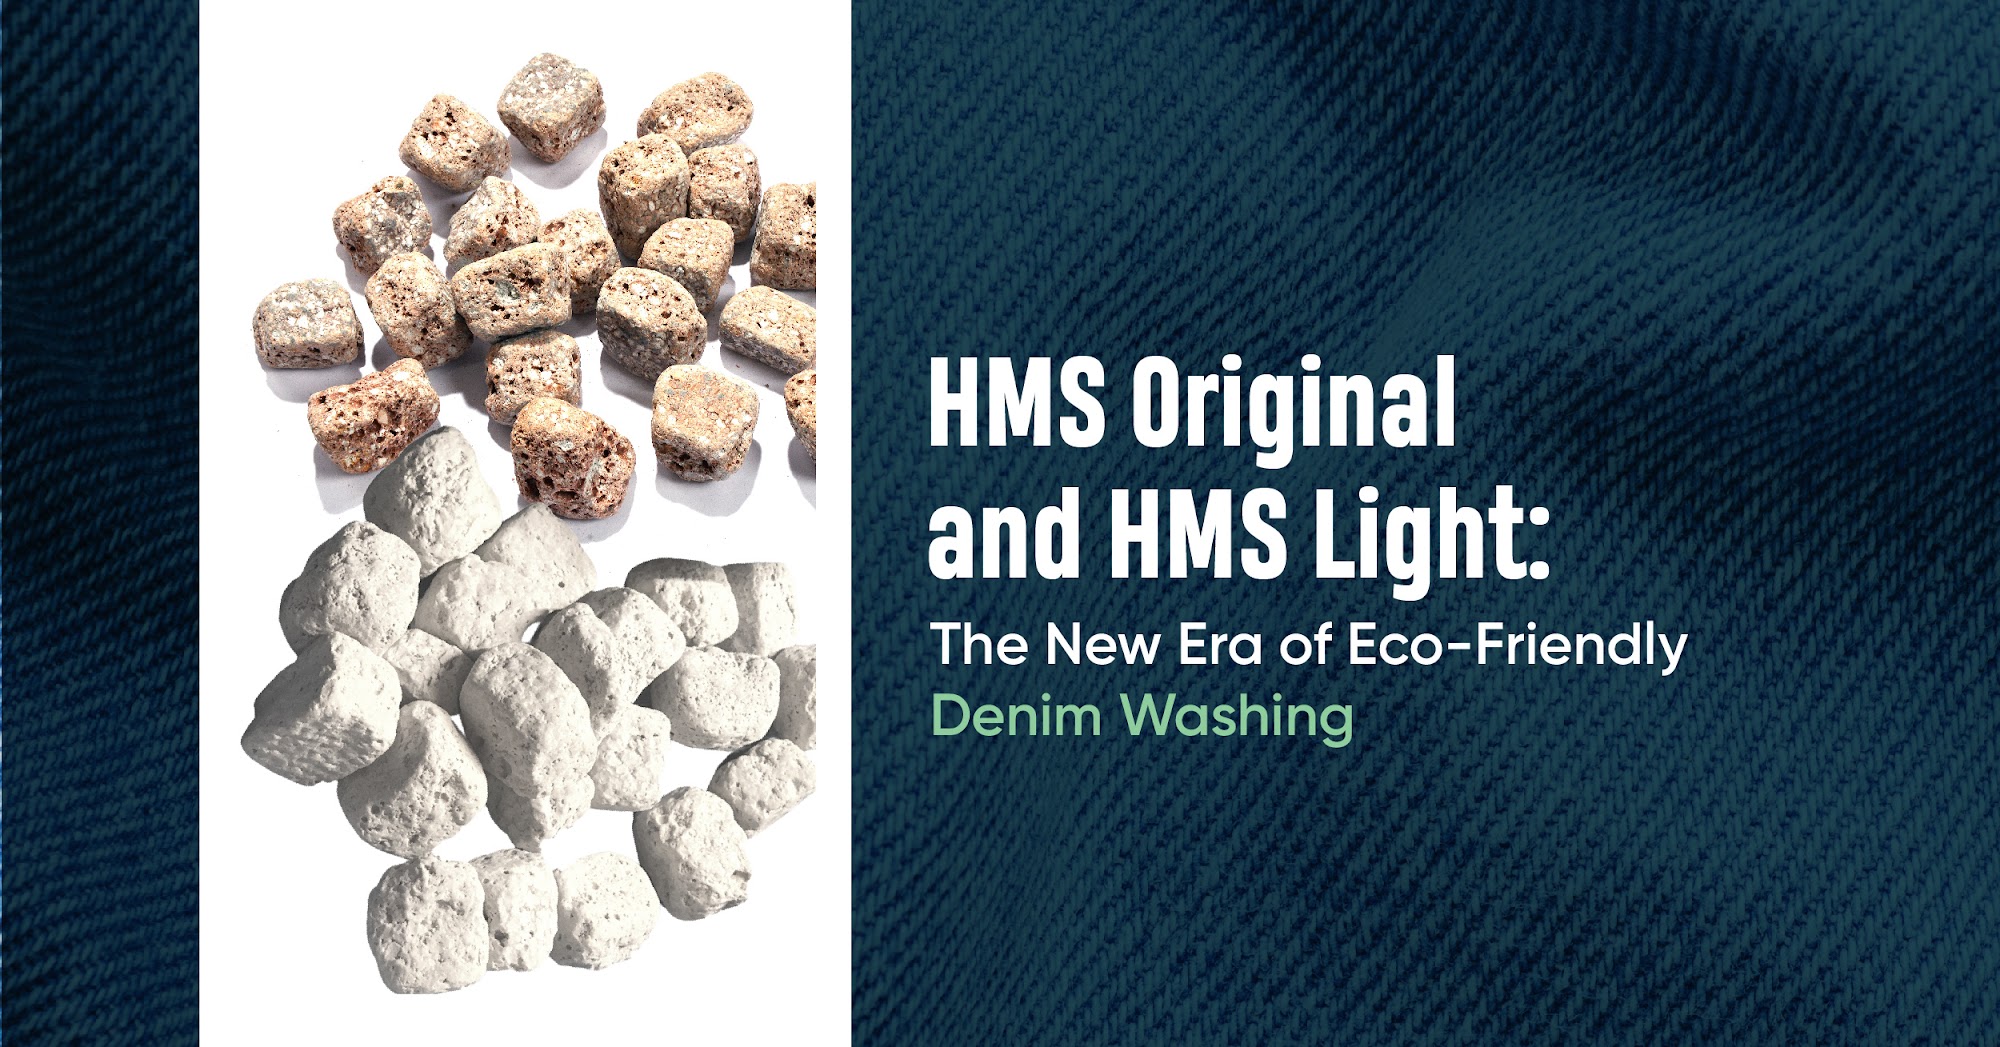 HMS Original and HMS Light: The New Era of Eco-Friendly Denim Washing